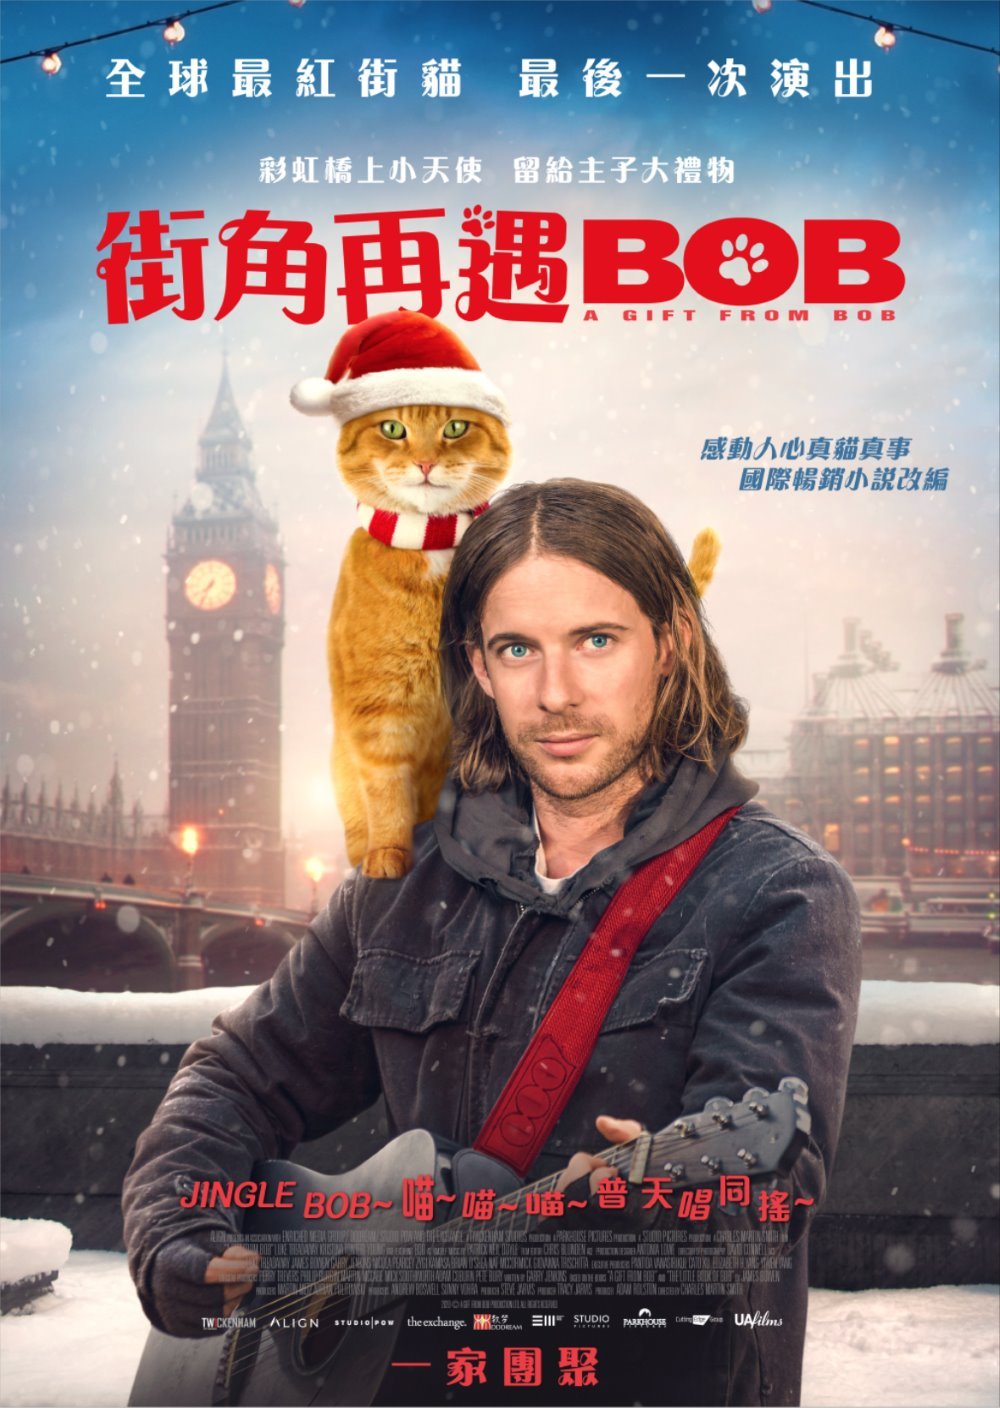 街角再遇Bob (Onyx版)電影圖片 - AGFB_Poster_HKFINAL.JPG_1608256367.jpg